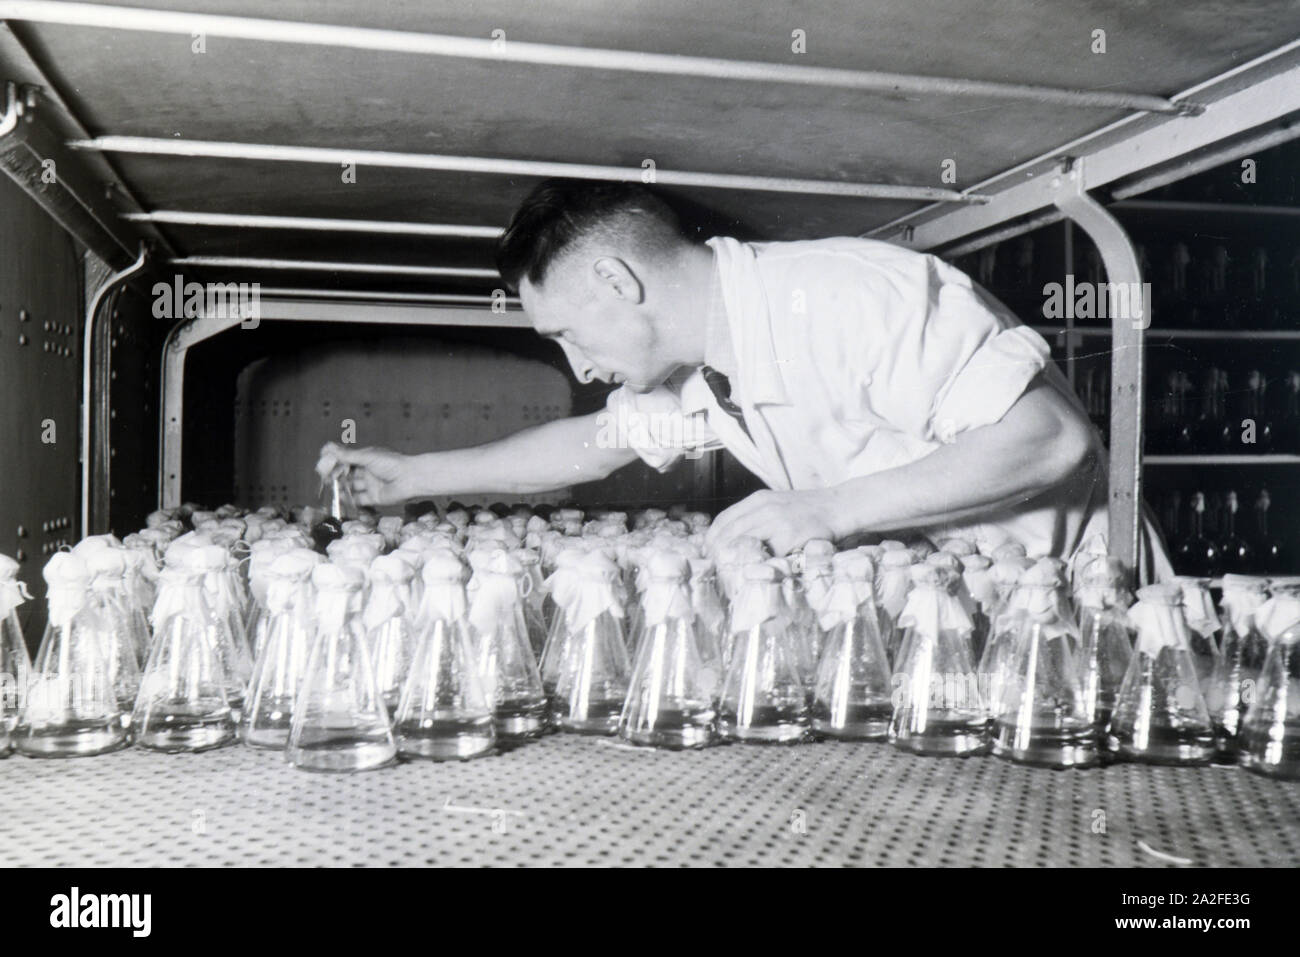 Ein Laborant sortiert abgefüllte Medikamentenproben in einem Labor der Behringwerke, Marburg, Deutschland 1930er Jahre. A lab assistant is arranging bottled medicine samples in a lab of the Behringwerke, Marburg, Germany 1930s. Stock Photo